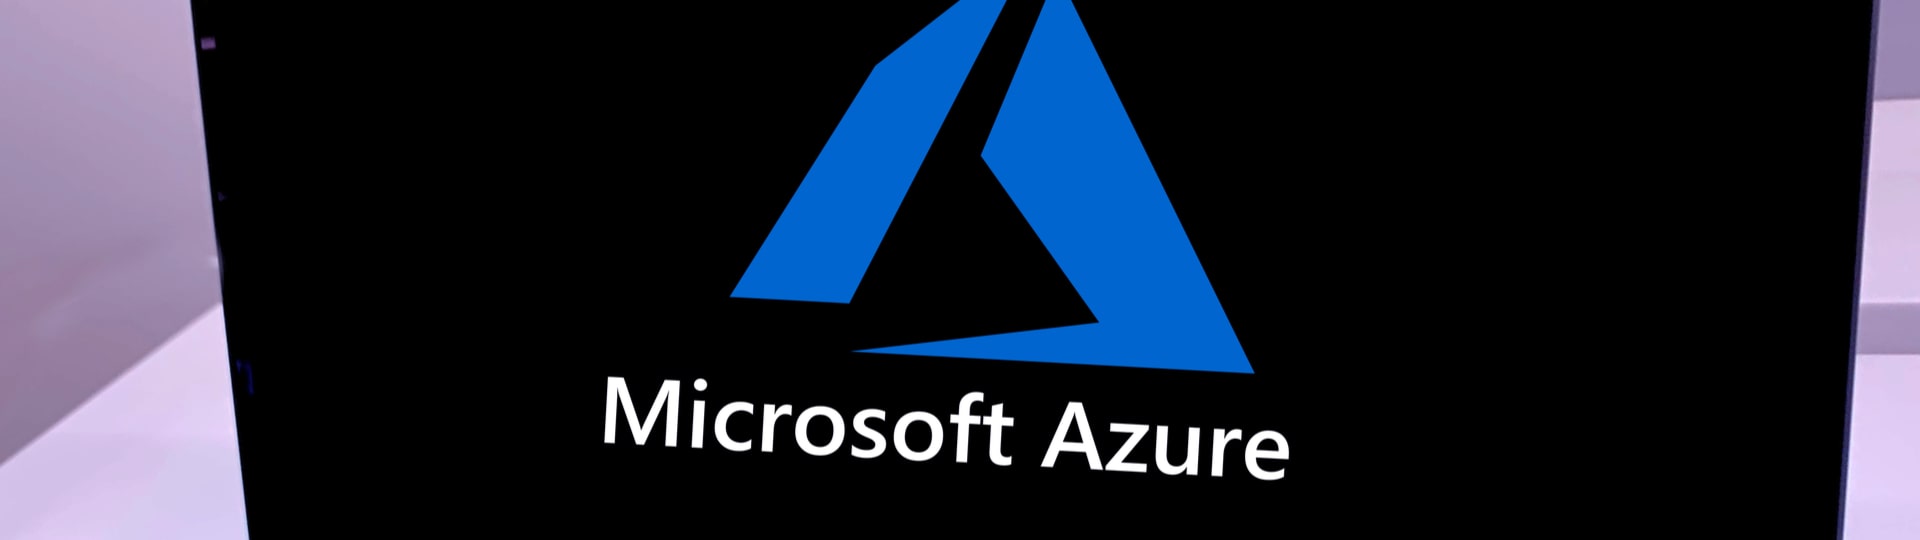 Microsoft varoval uživatele služby Azure kvůli bezpečnostní slabině